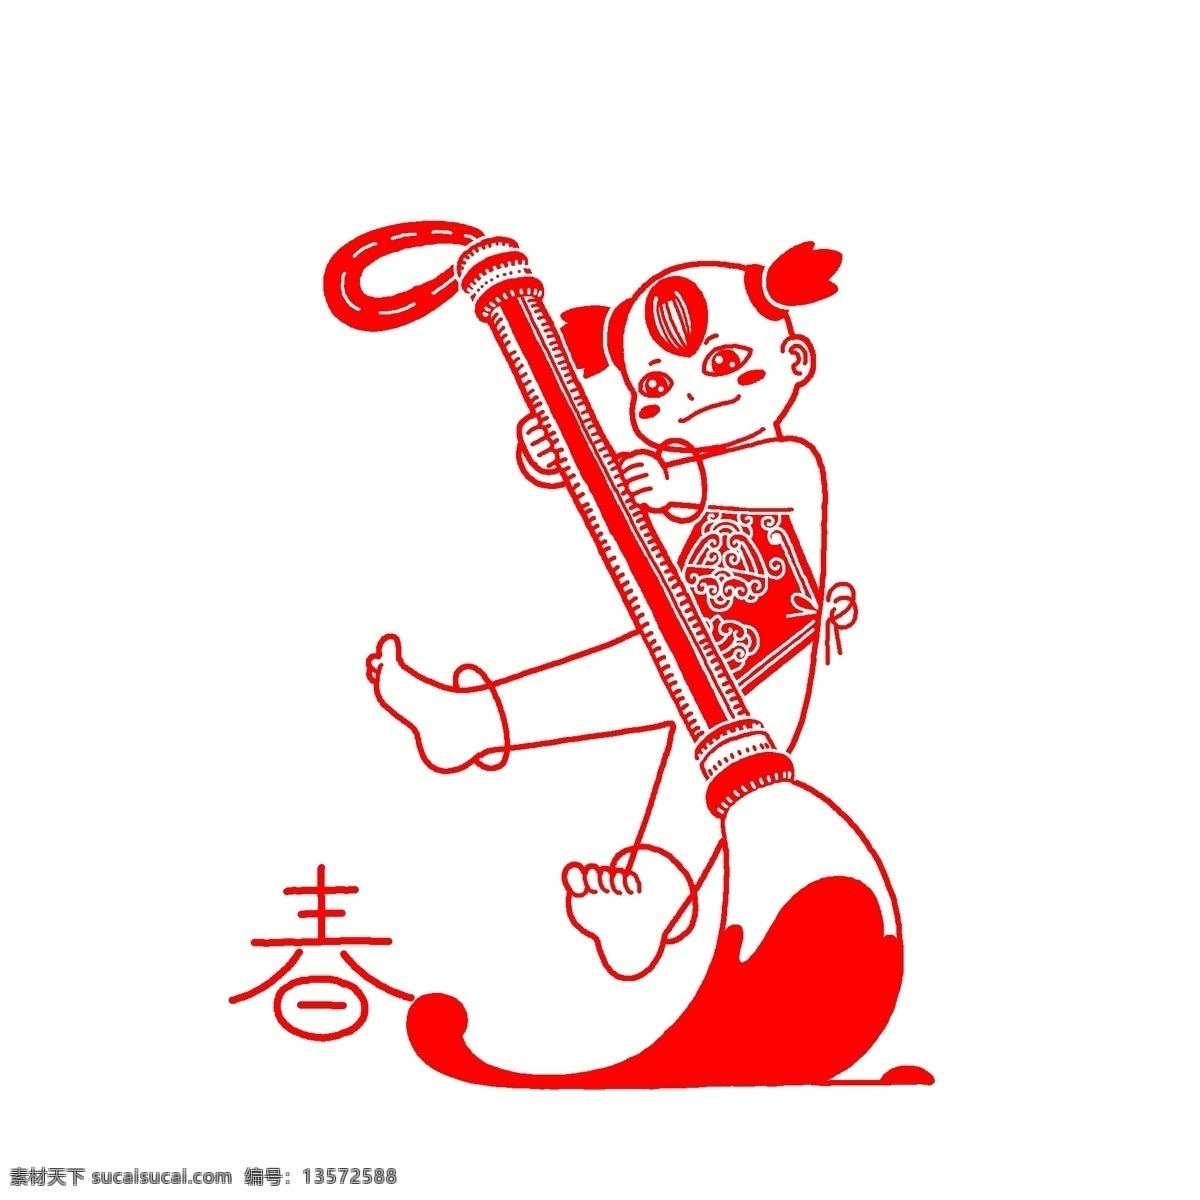 红色 剪纸 毛笔 插画 红色的剪纸 中国风插画 手绘红色插画 卡通红色插画 卡通人物插画 手绘卡通 红色的毛笔